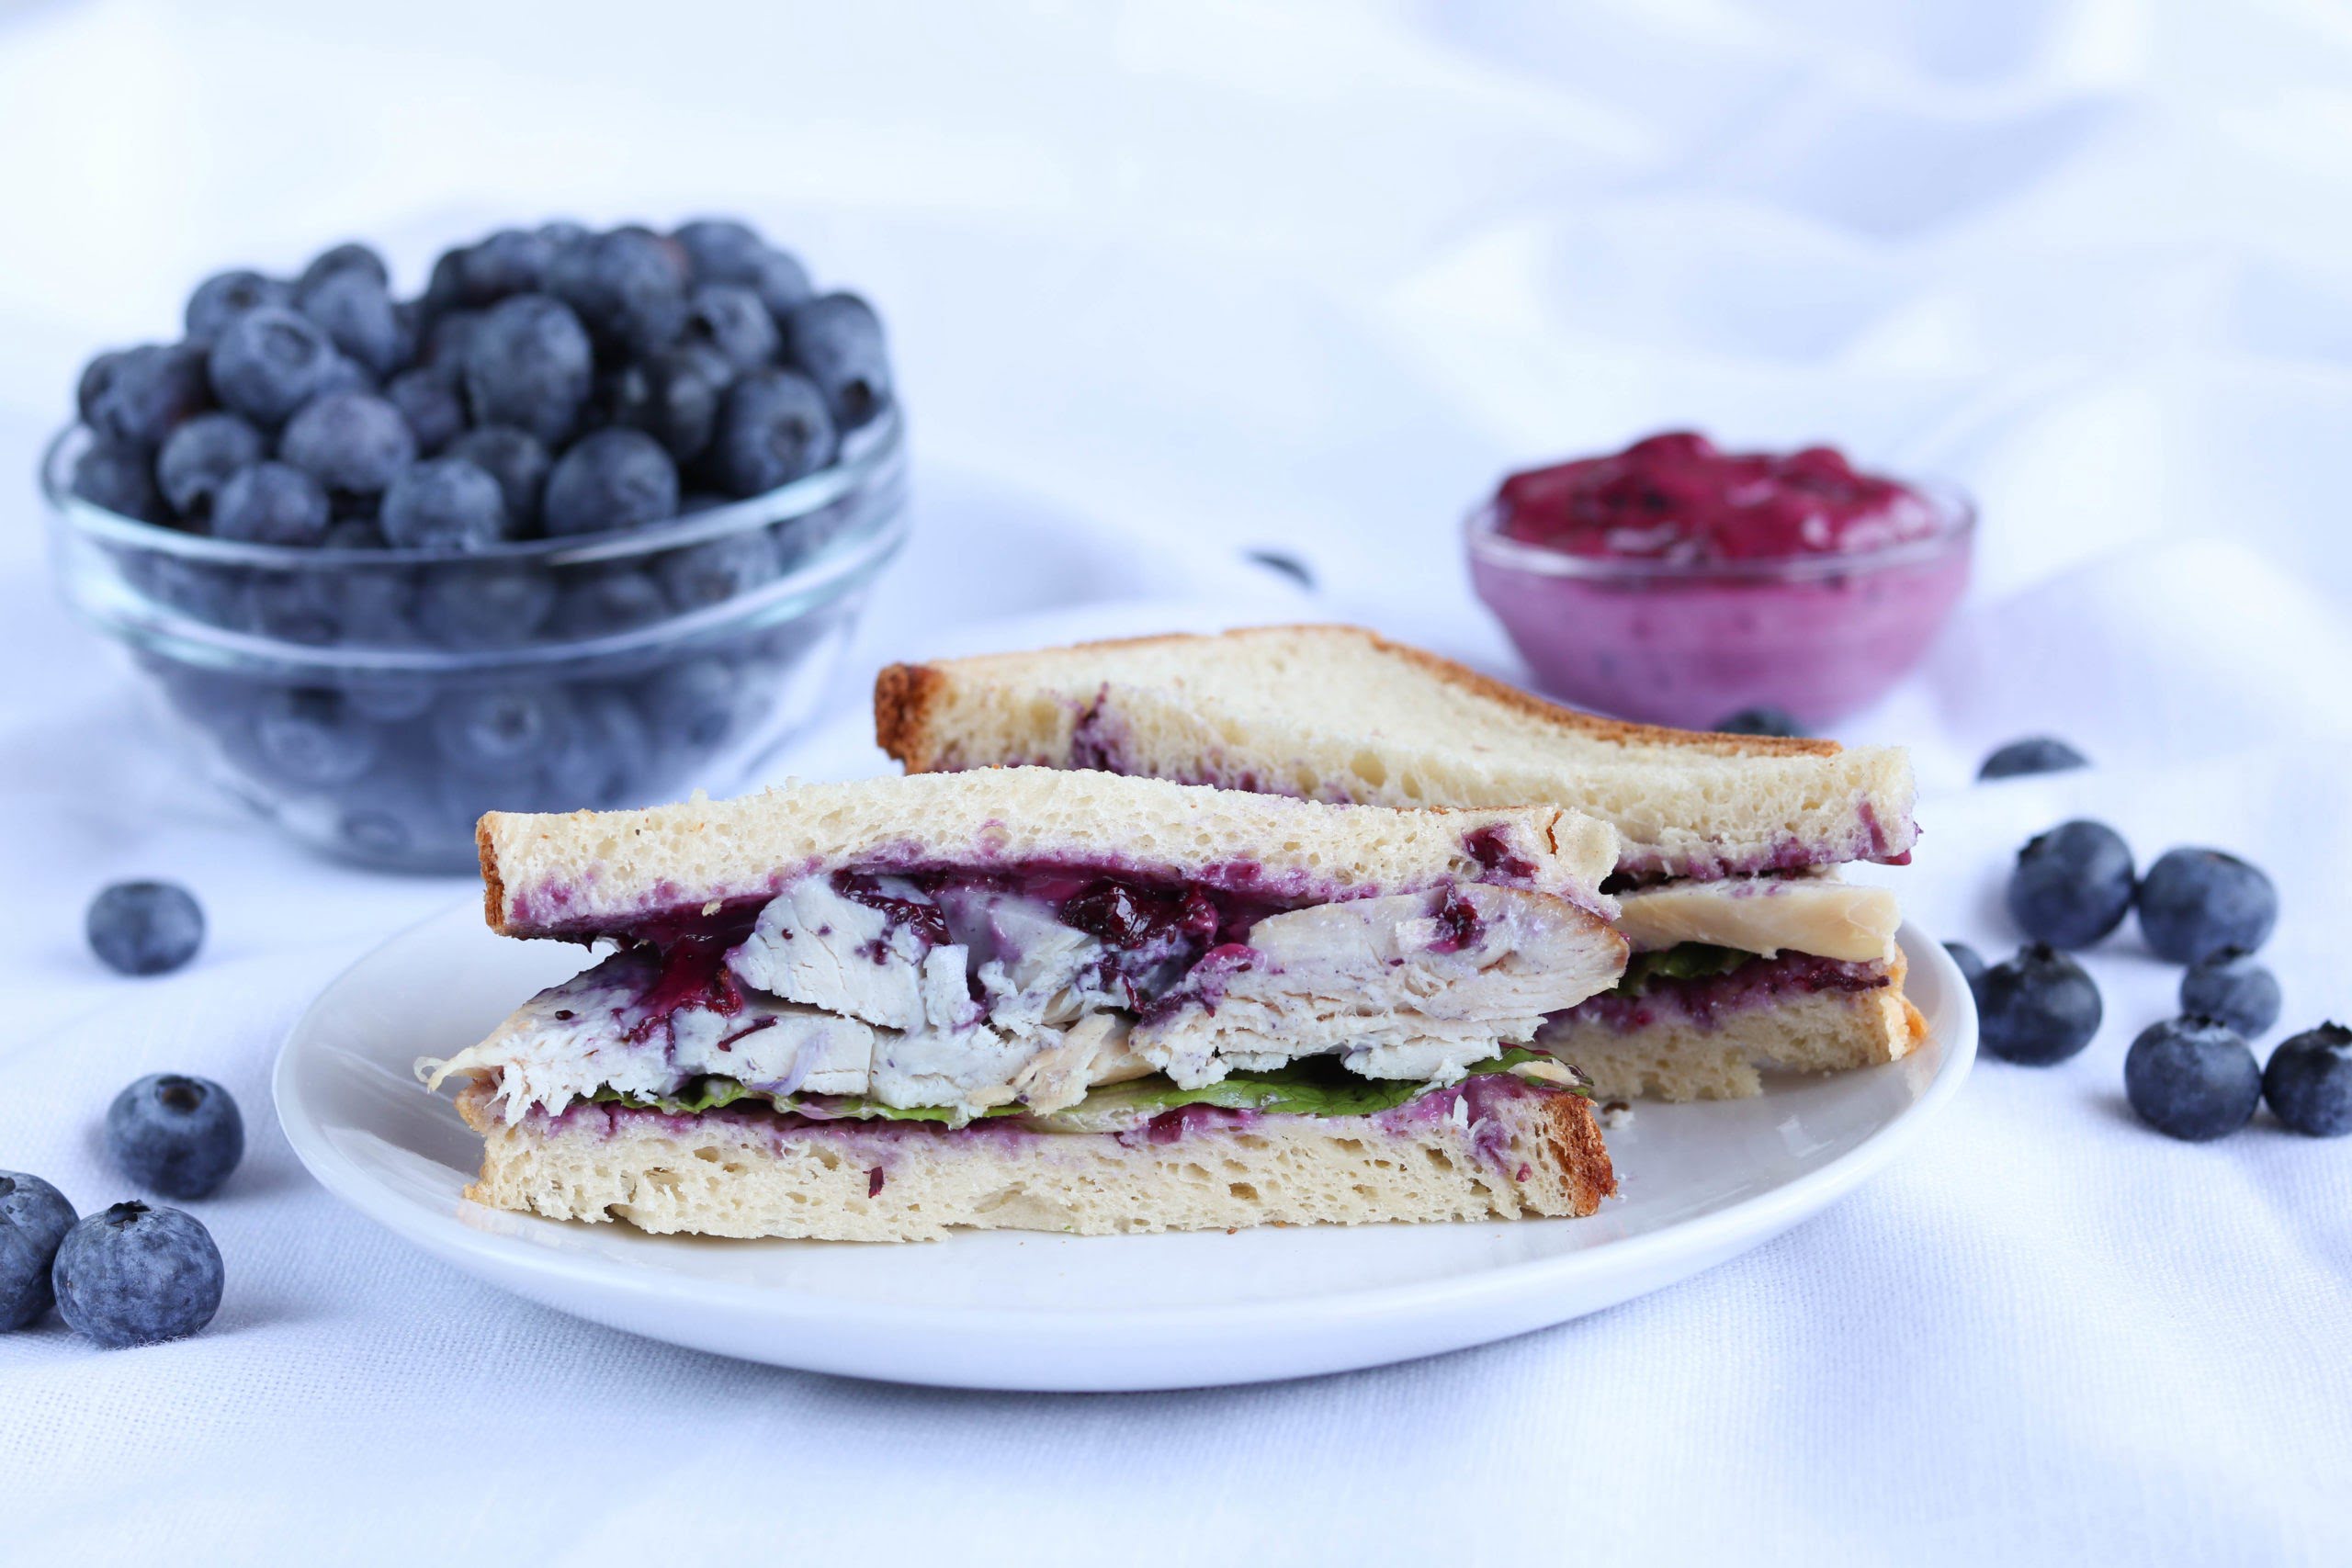 Turkey Sandwich with Blueberry Mayo